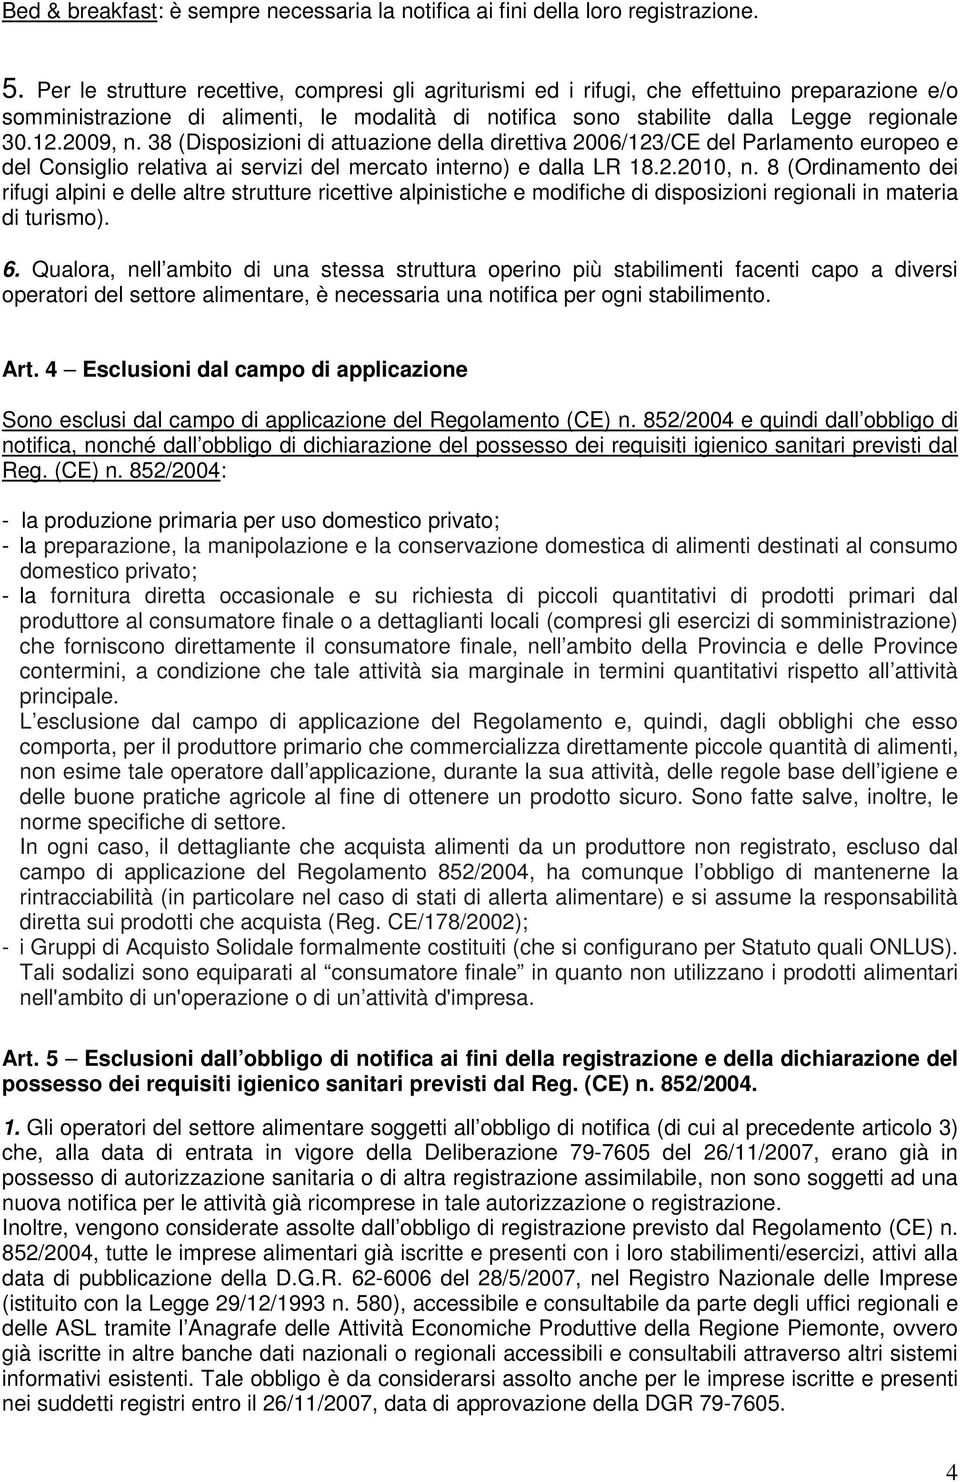 2009, n. 38 (Disposizioni di attuazione della direttiva 2006/123/CE del Parlamento europeo e del Consiglio relativa ai servizi del mercato interno) e dalla LR 18.2.2010, n.